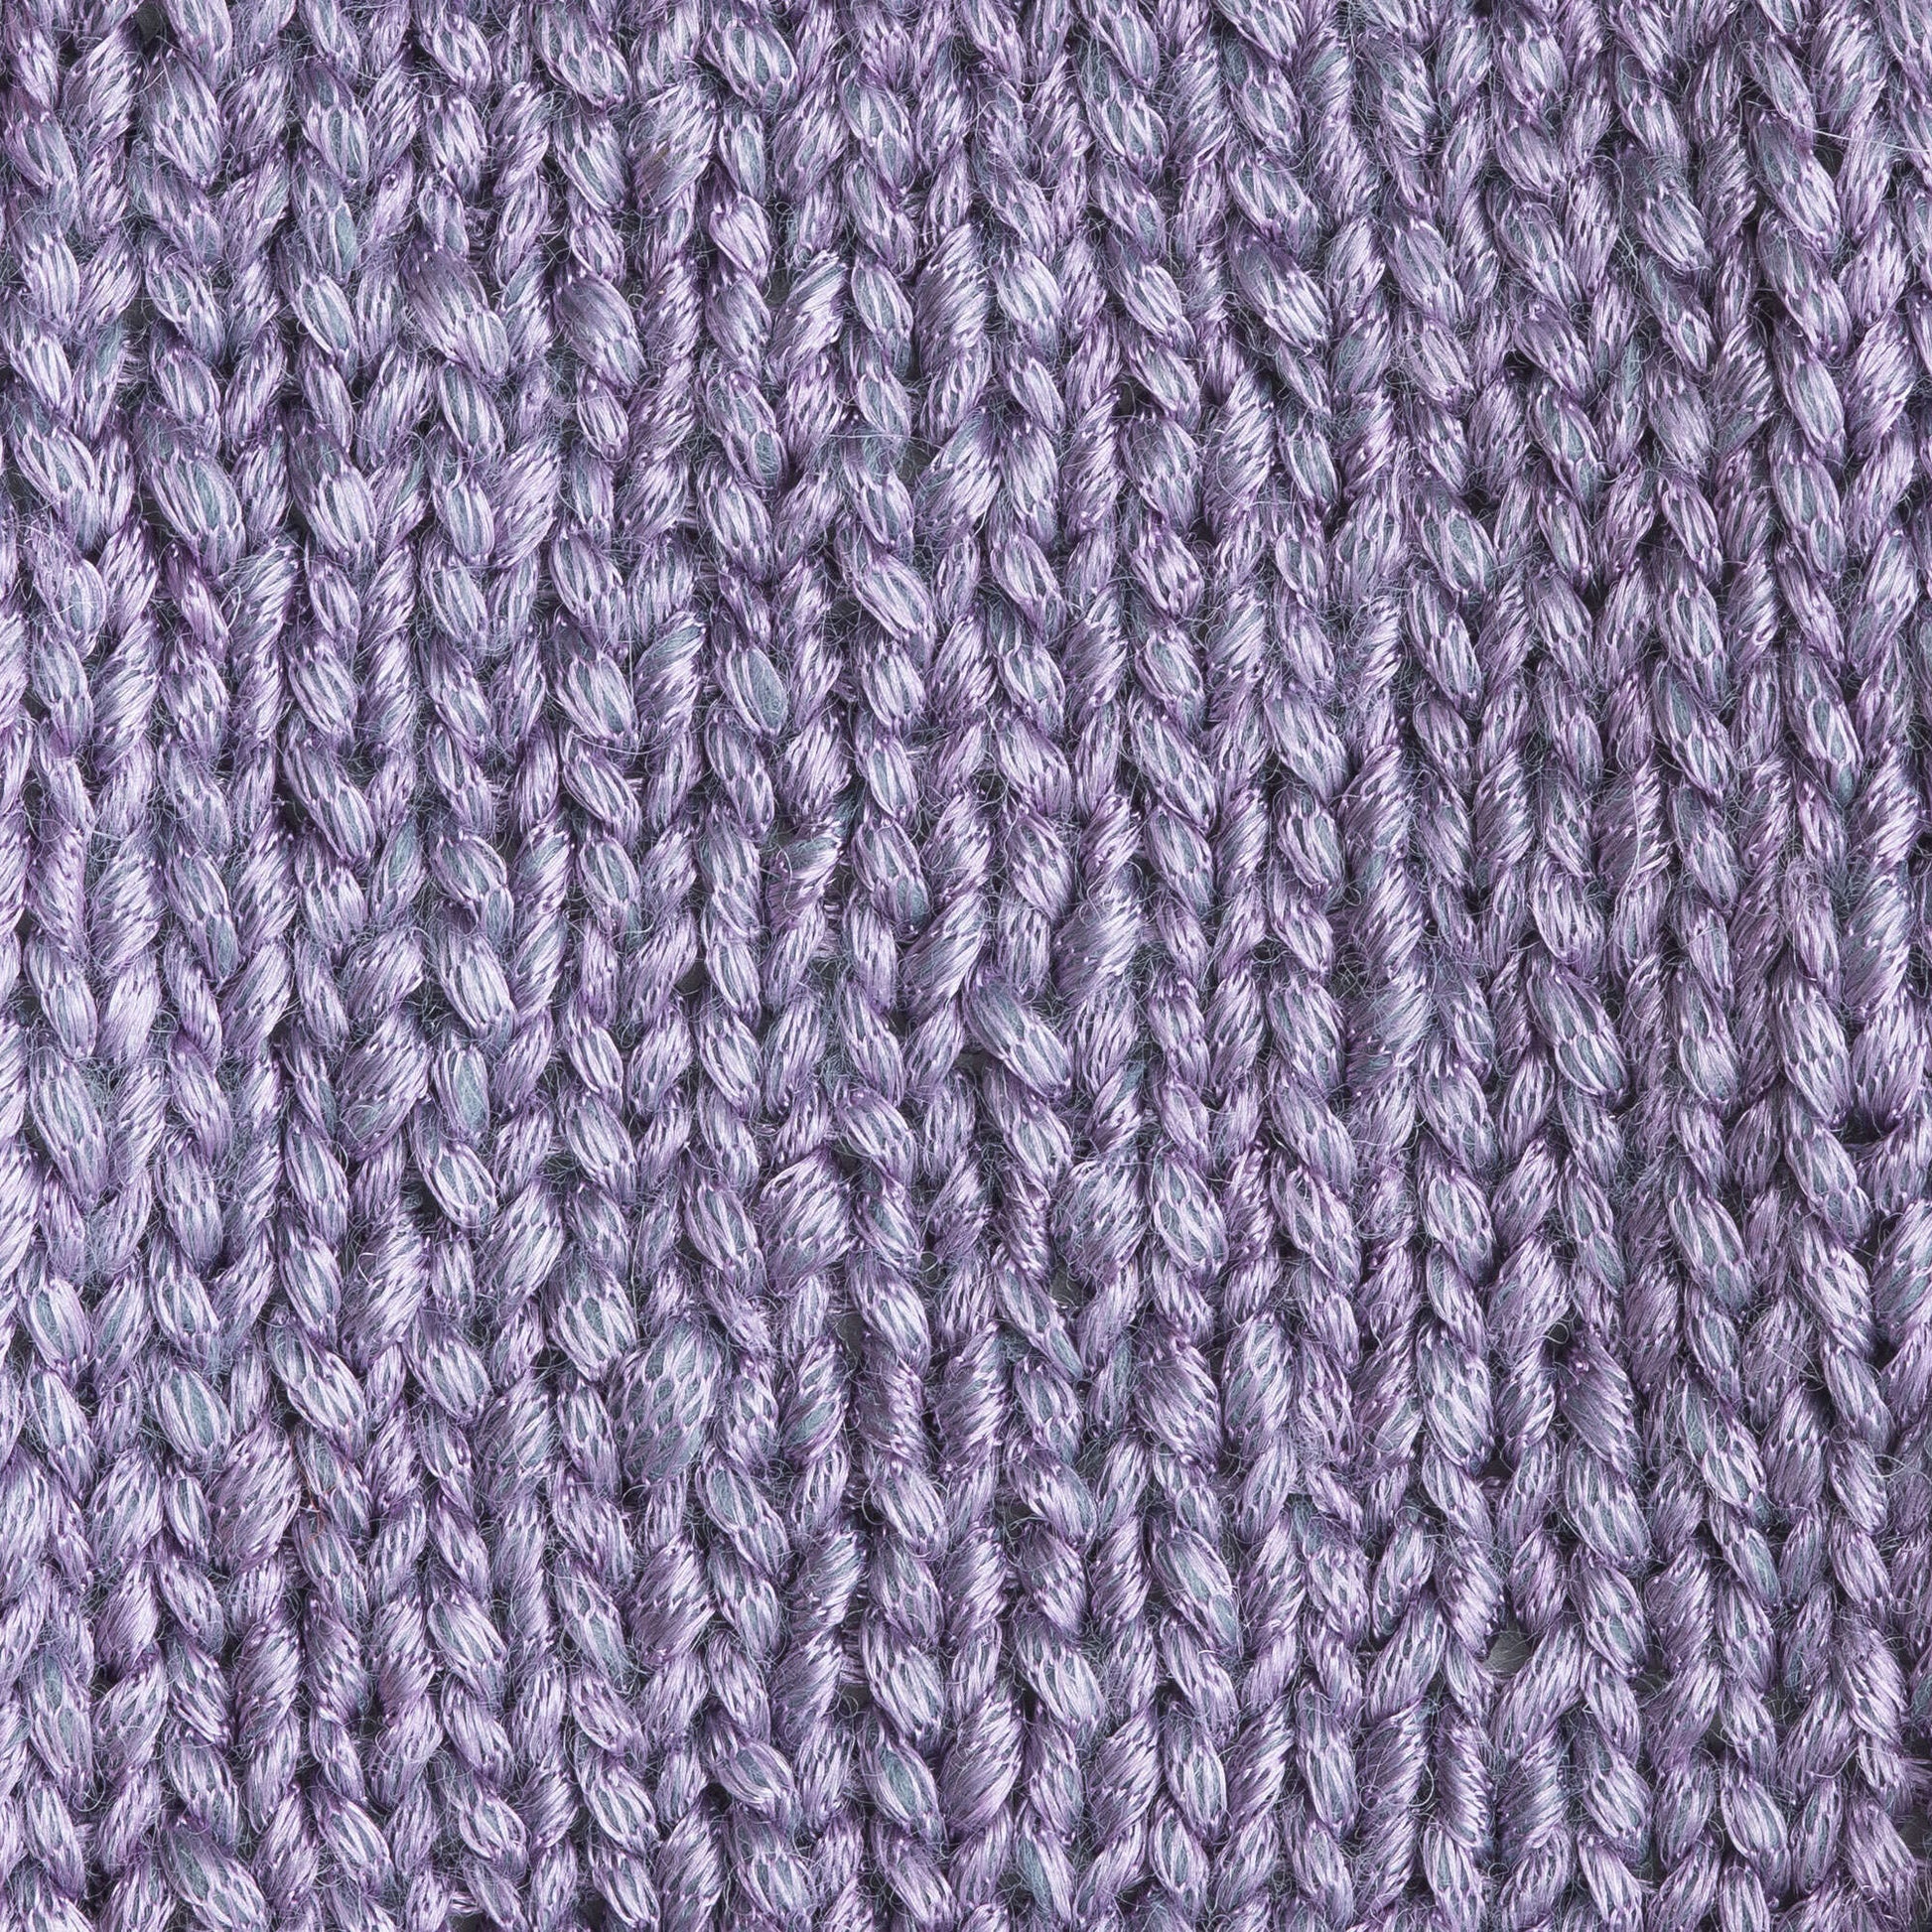 Patons Metallic Yarn - Discontinued Metallic Purple